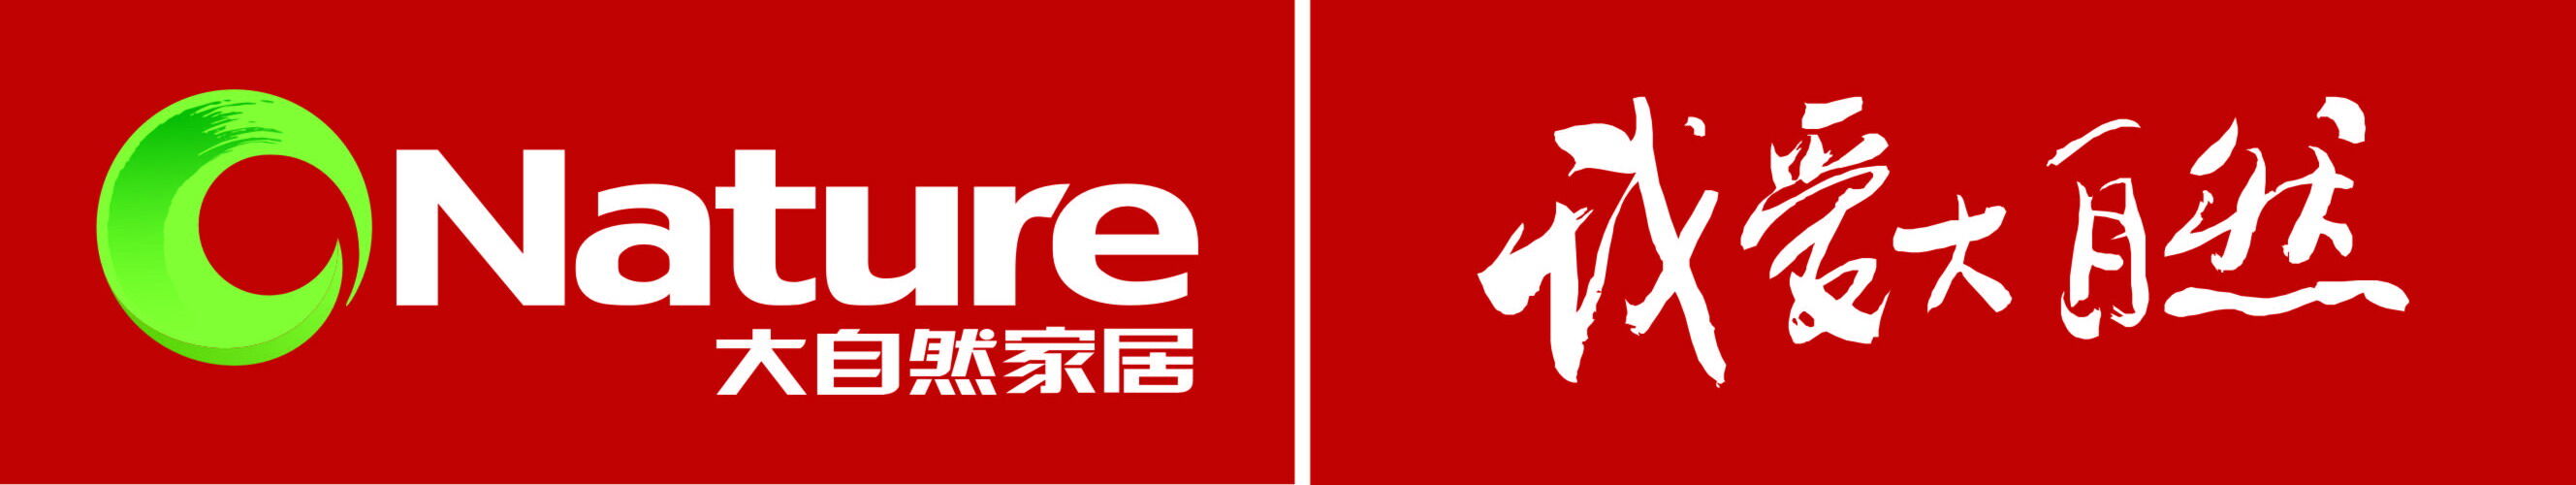 中山市大自然木业有限公司logo